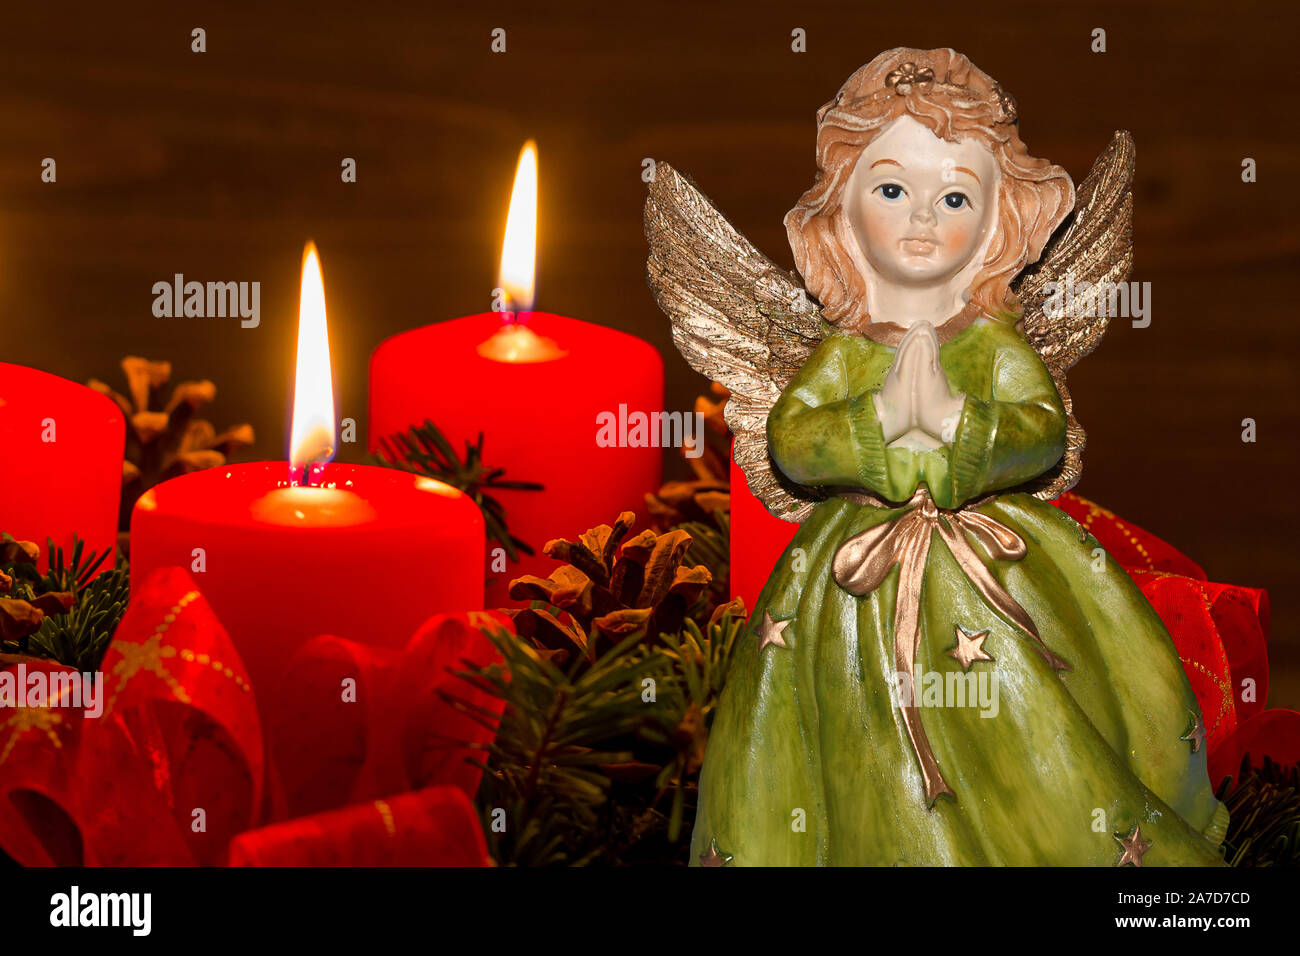 Ein Adventskranz zu Weihnachten sorgt für romatinsche Stimmung in der stillen Advent Zeit. 2 brennende Kerzen, 2. Advent, Engel, Weihnachtsengel, Stock Photo